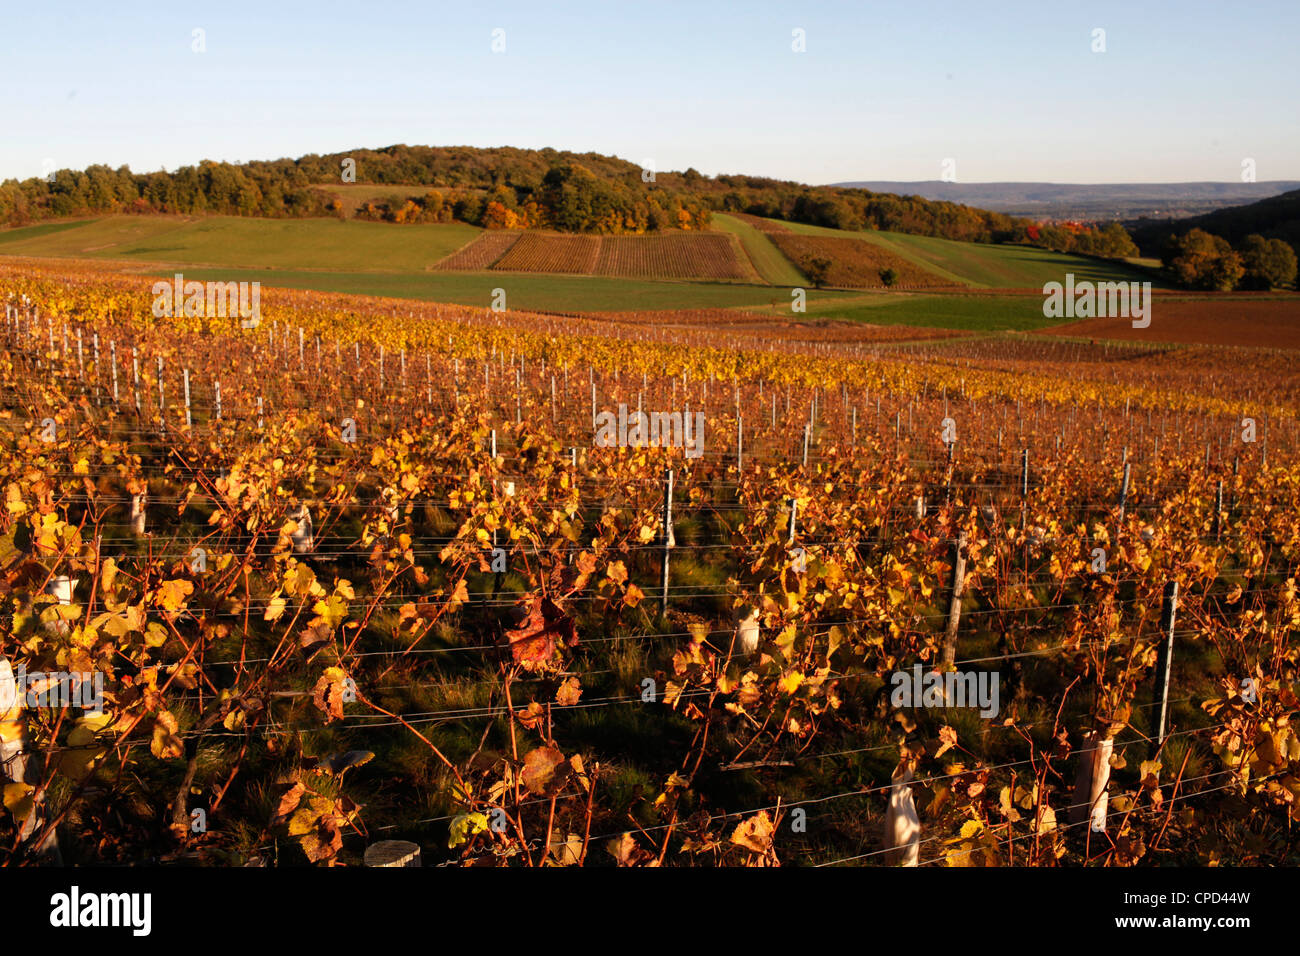 Vignoble de Bourgogne, Culles-les-Roches, Saône-et-Loire, Bourgogne, France, Europe Banque D'Images